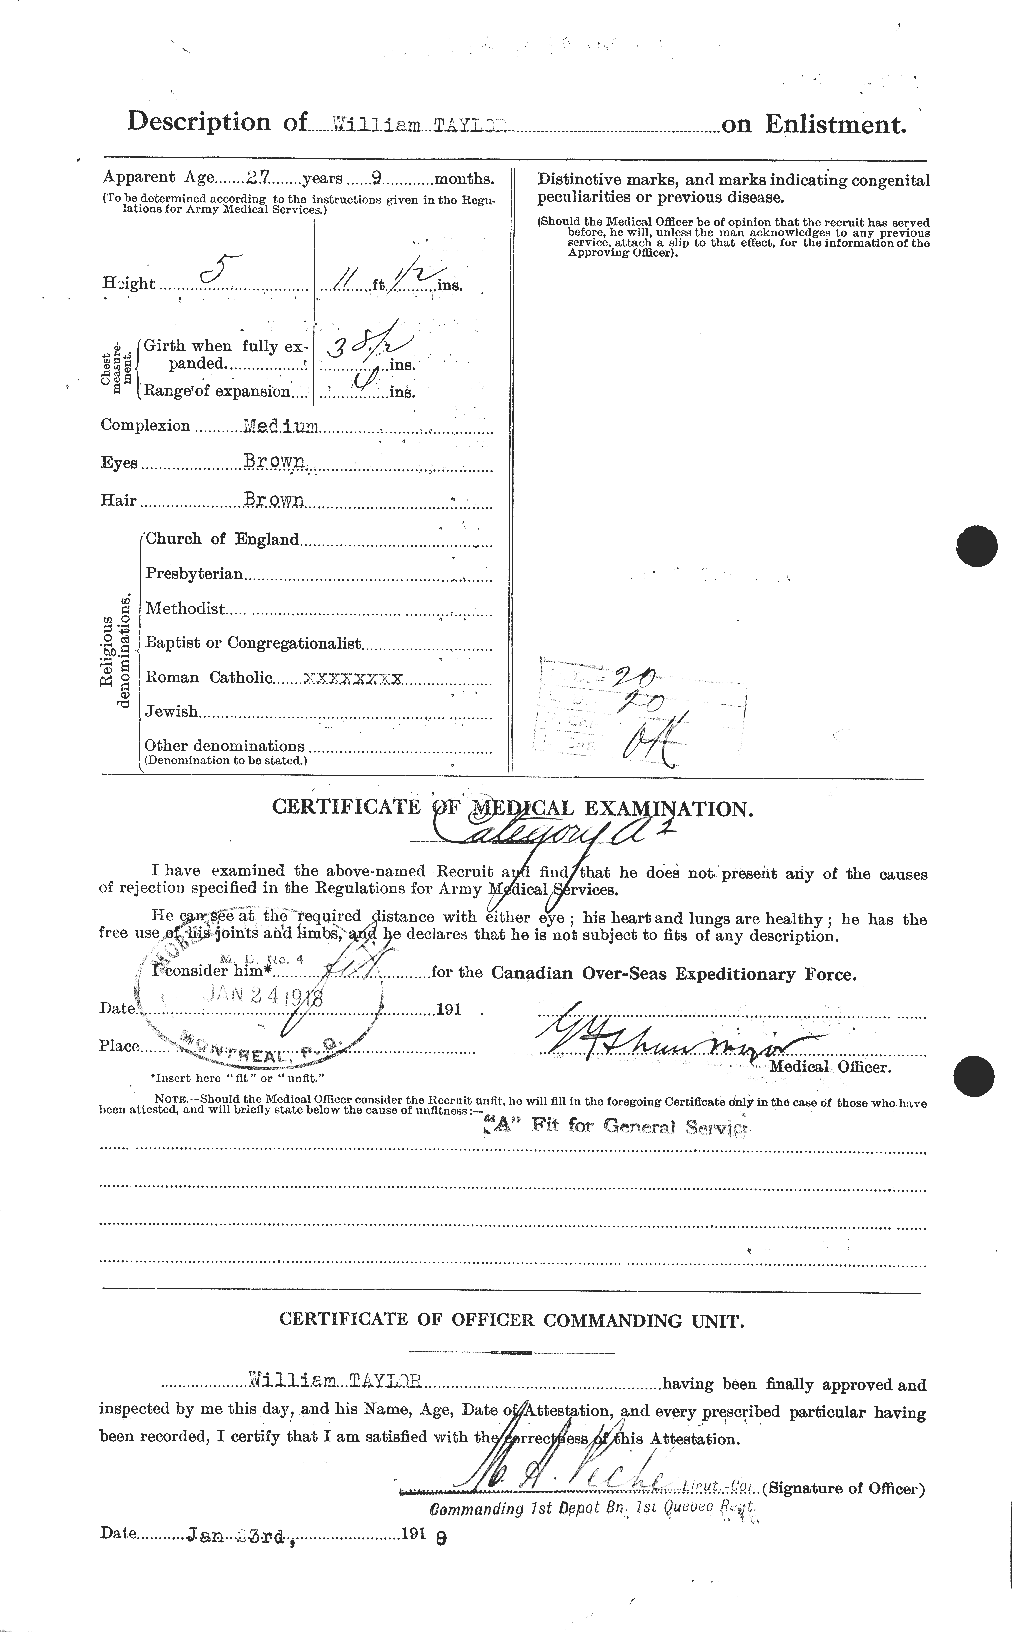 Dossiers du Personnel de la Première Guerre mondiale - CEC 628110b